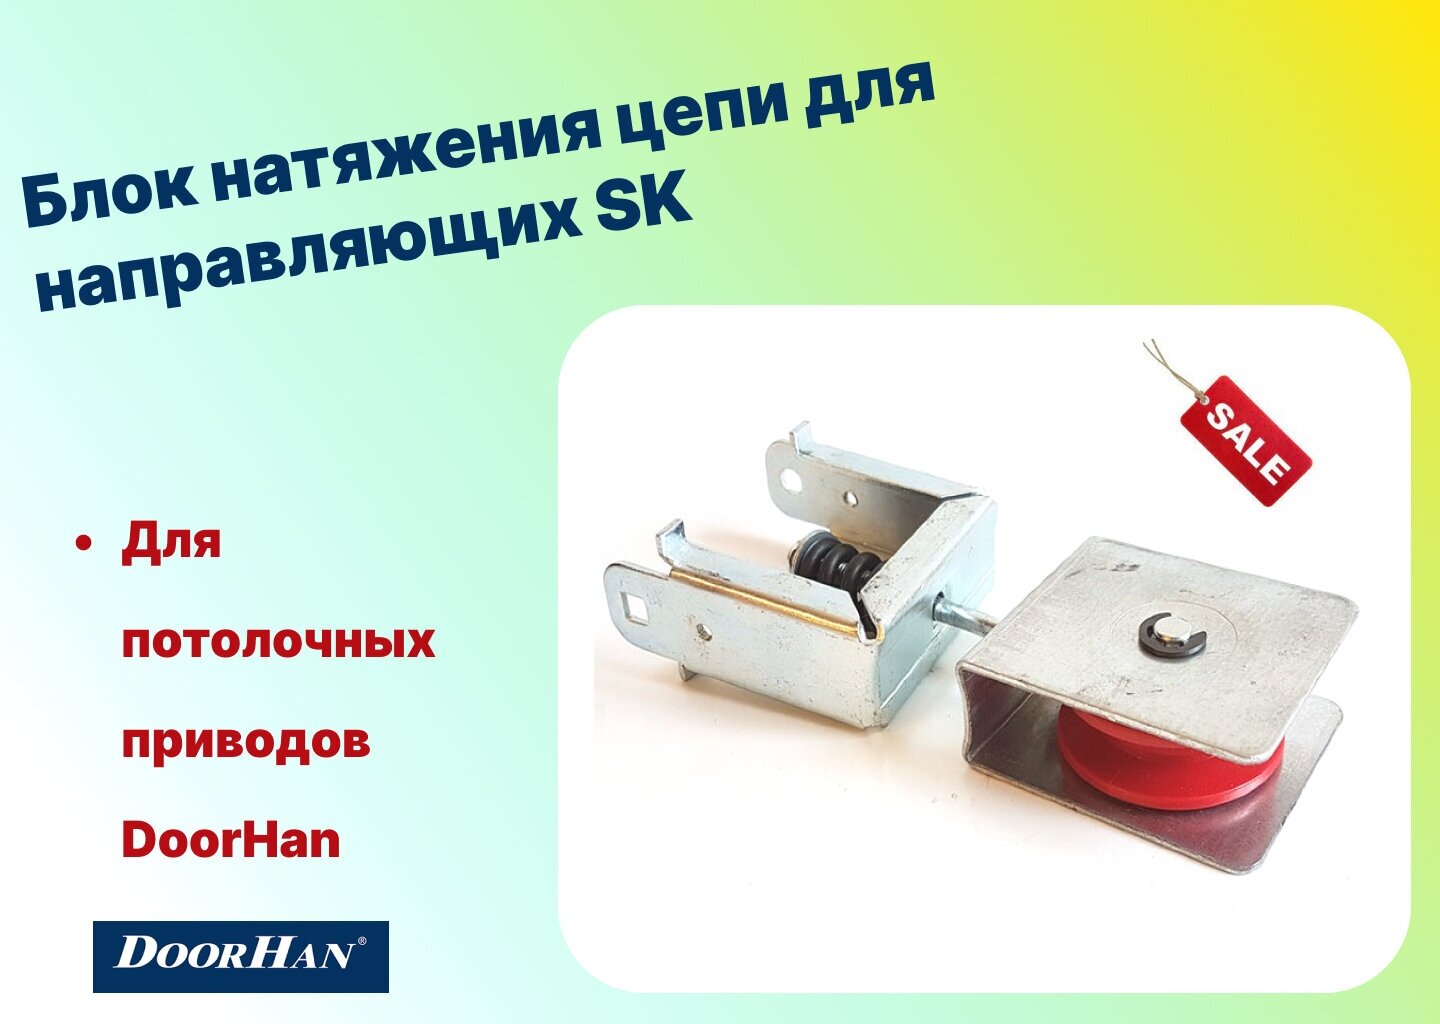 Блок натяжения цепи для направляющих SK-3000/3300/3600/4200/4600 DHG011 (DoorHan)